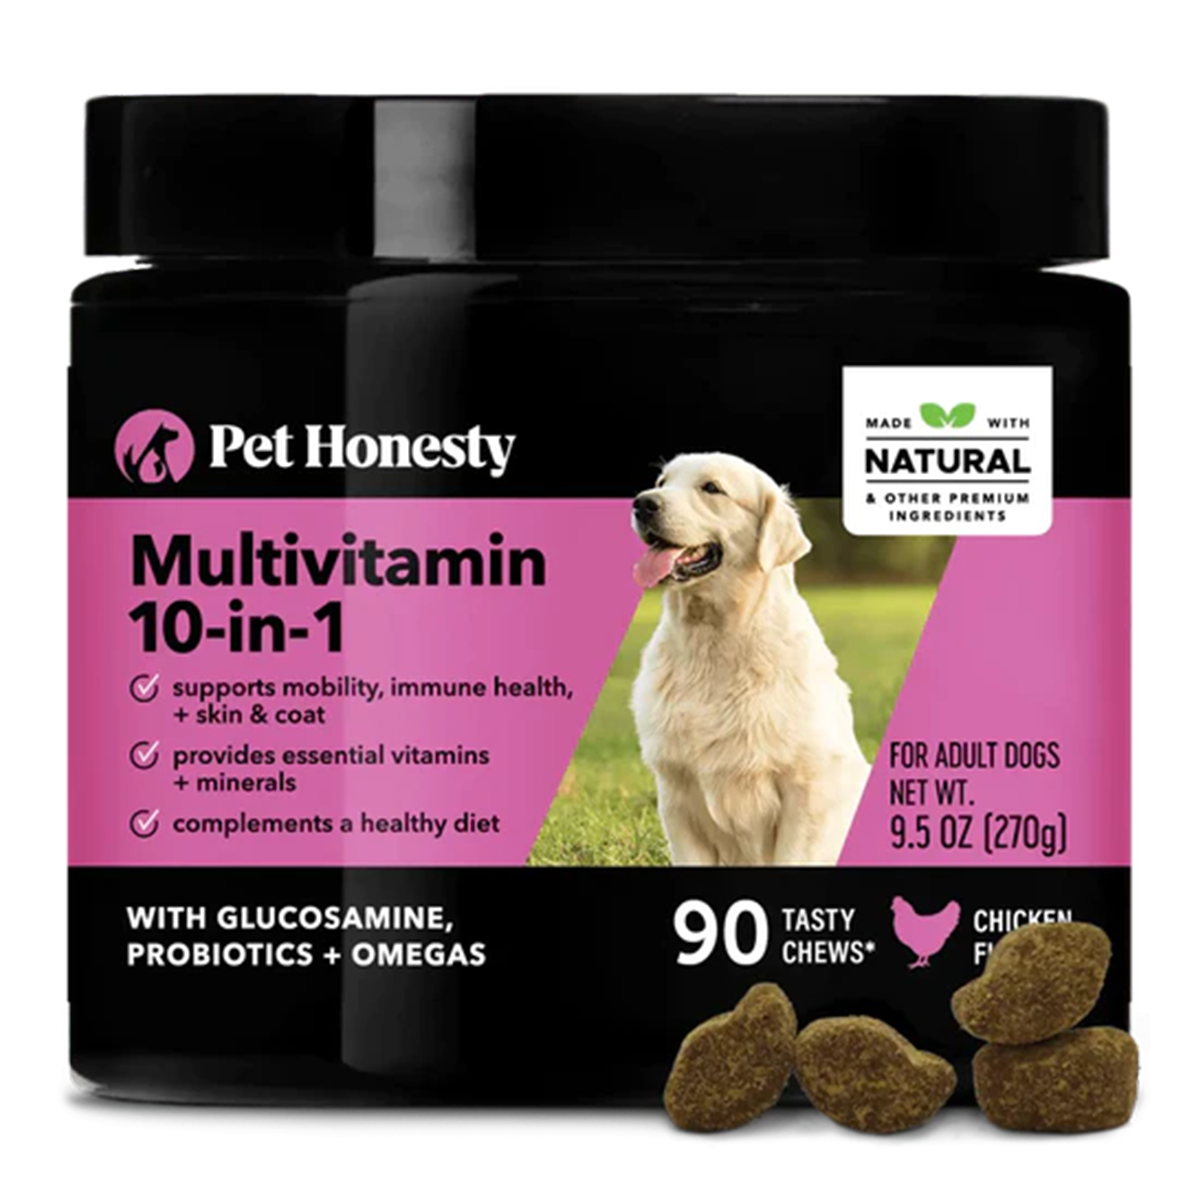 Pet Honesty Multivitamin 10-in-1 Dog Chew Supplement - Chicken